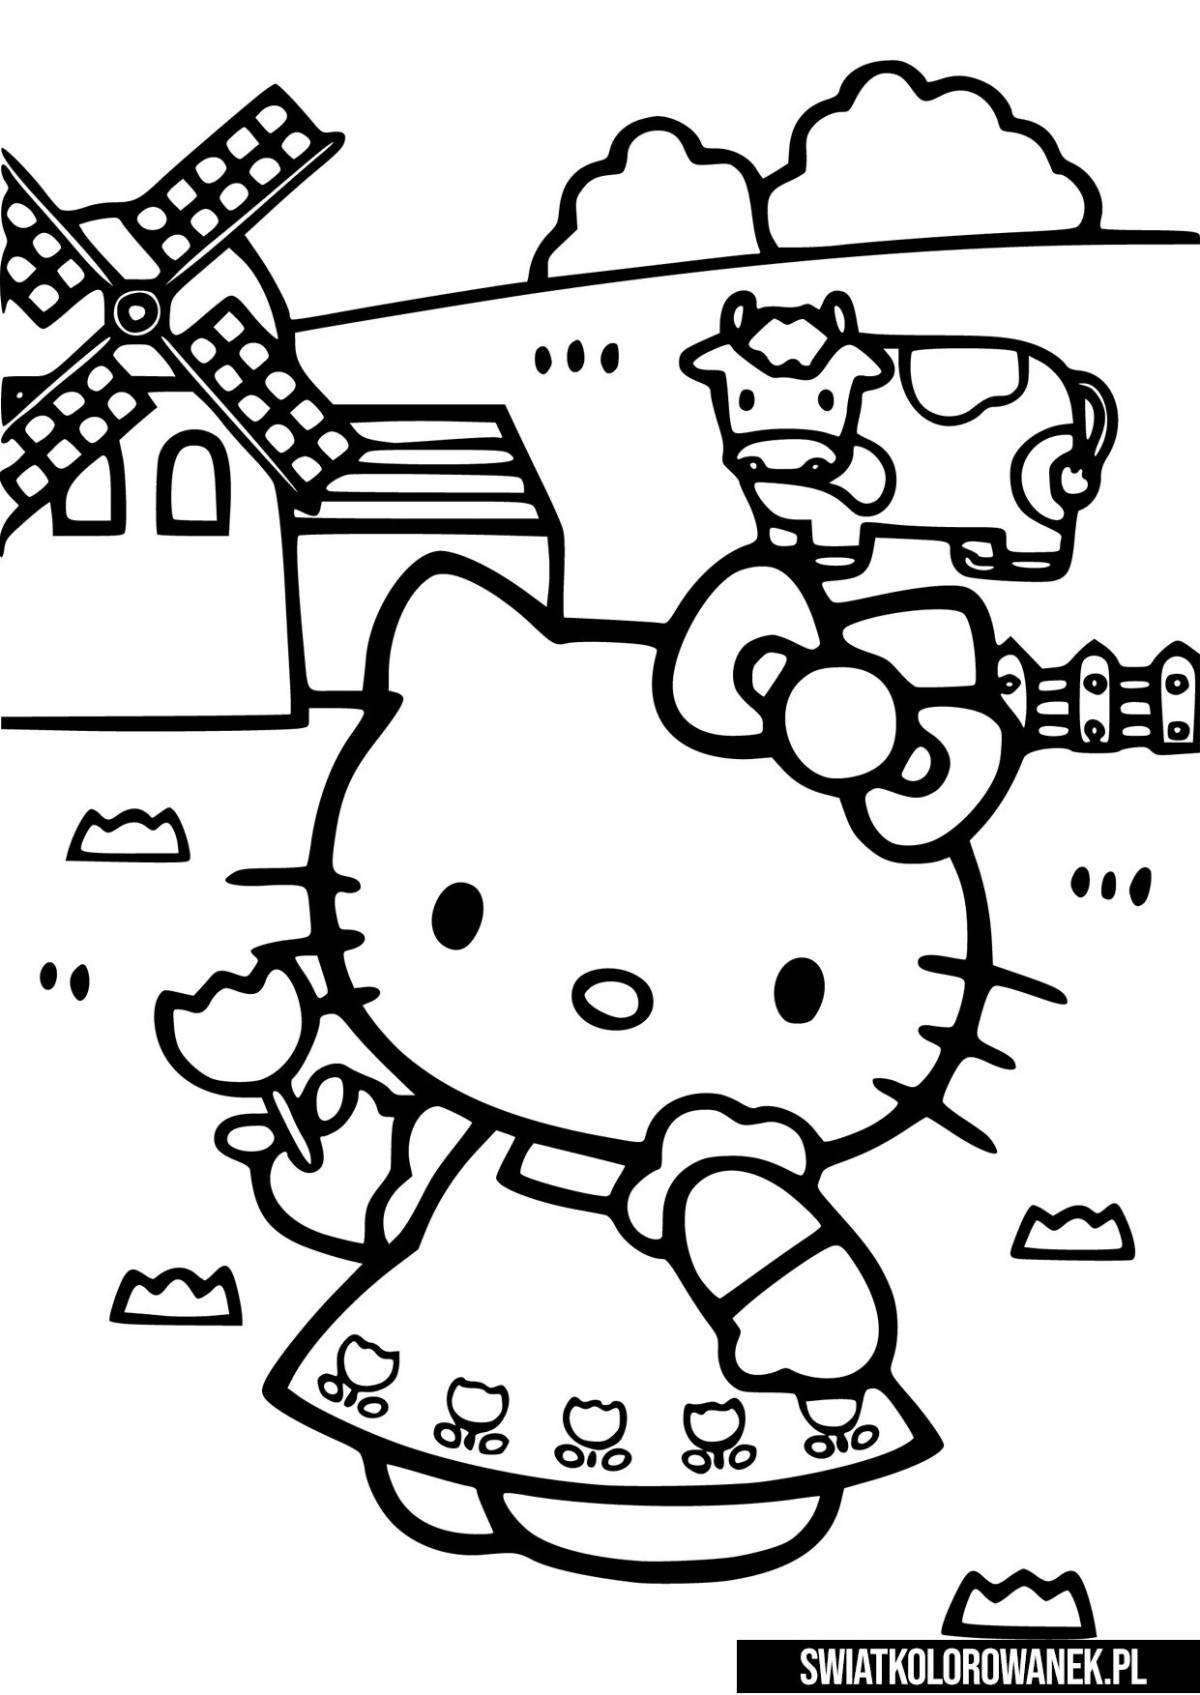 Симпатичная маленькая hello kitty kuromi coloring page